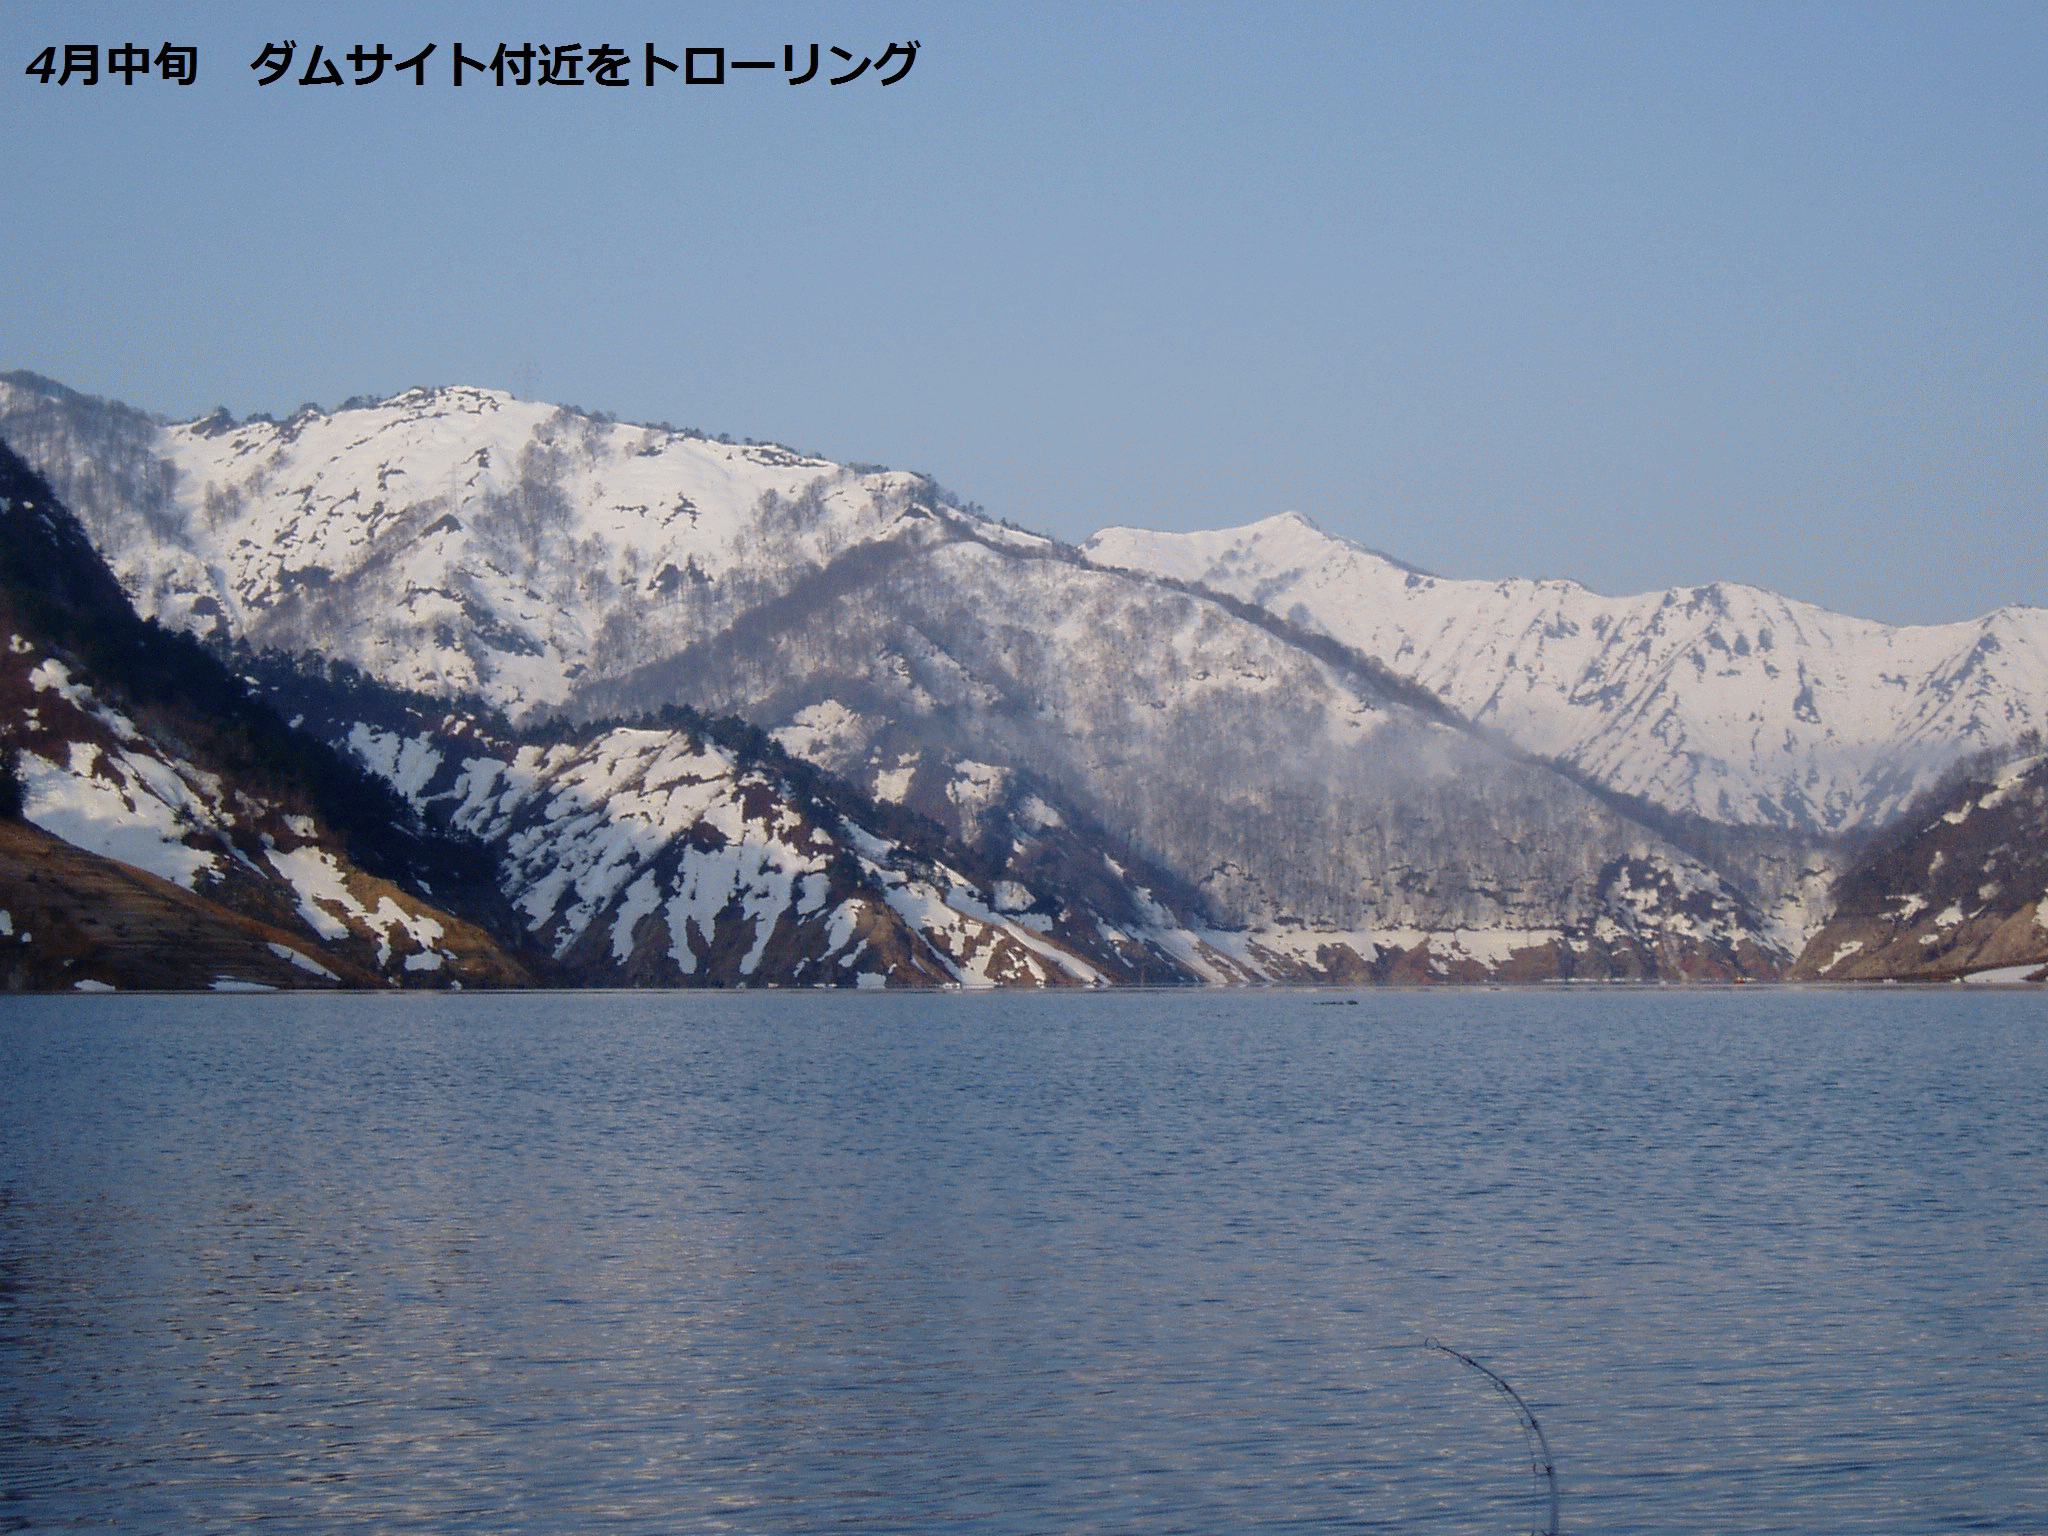 田子倉湖、銀山湖の岩魚とサクラマス